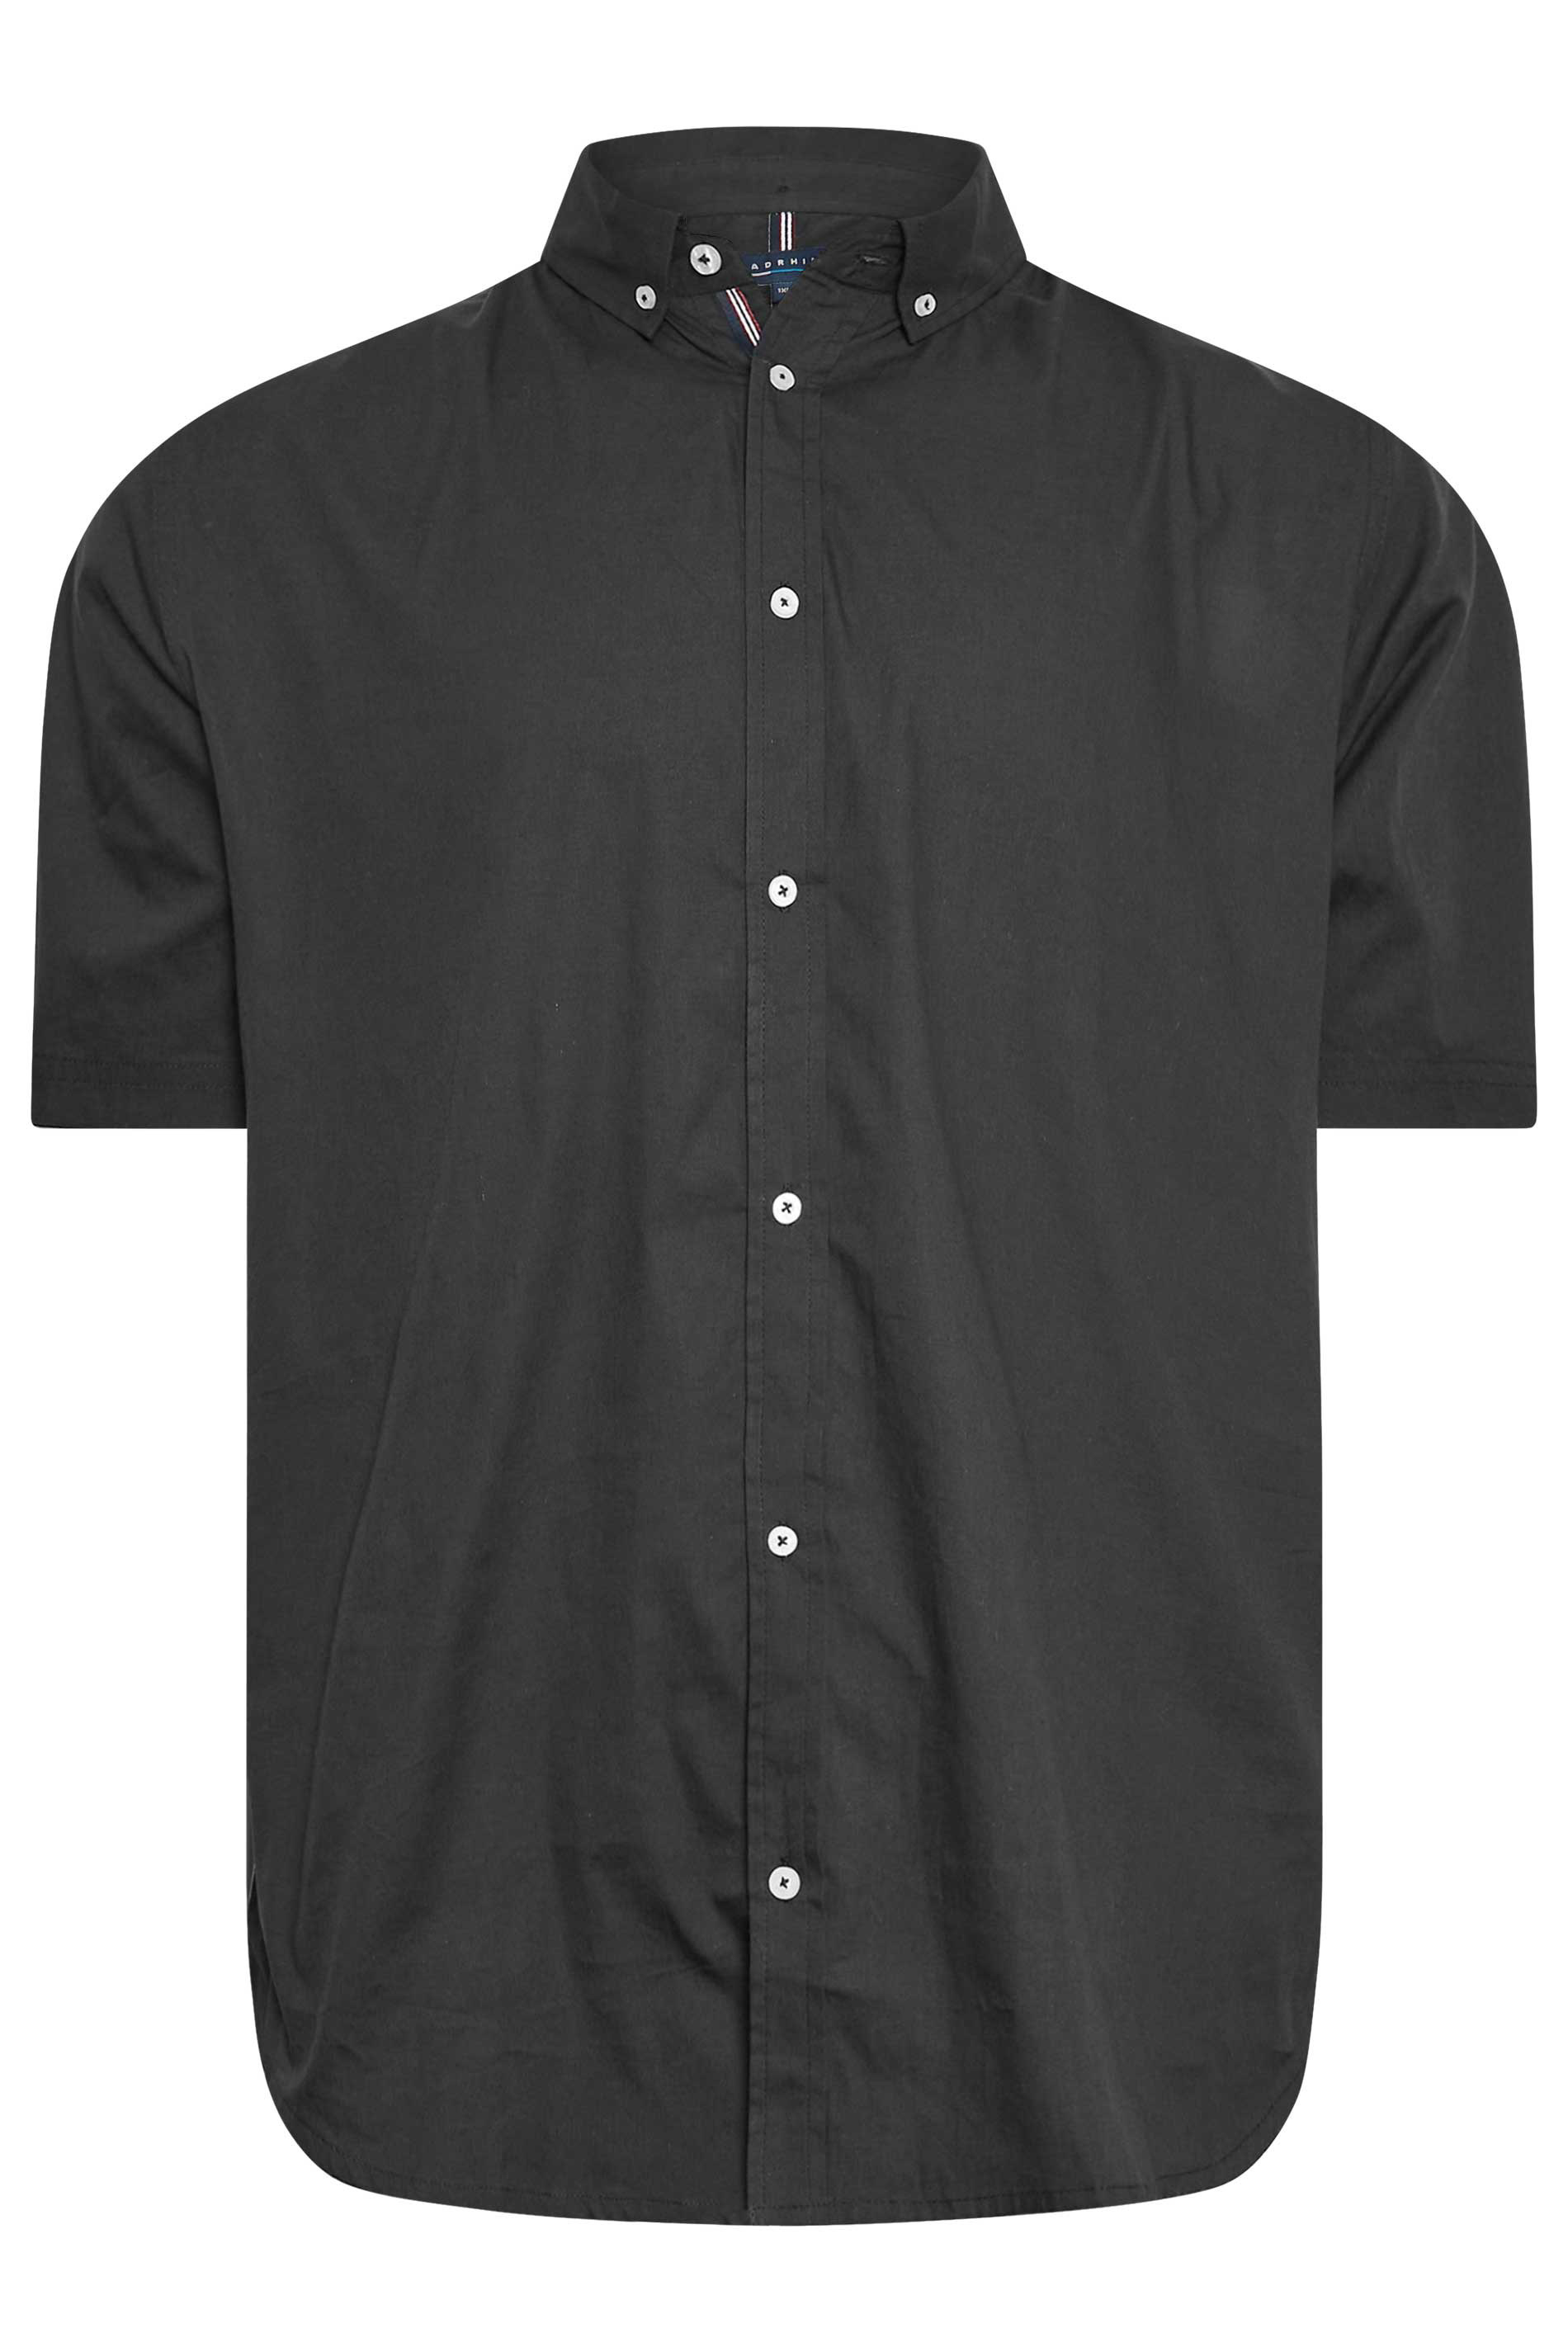 BadRhino Black Cotton Poplin Short Sleeve Shirt | BadRhino 2